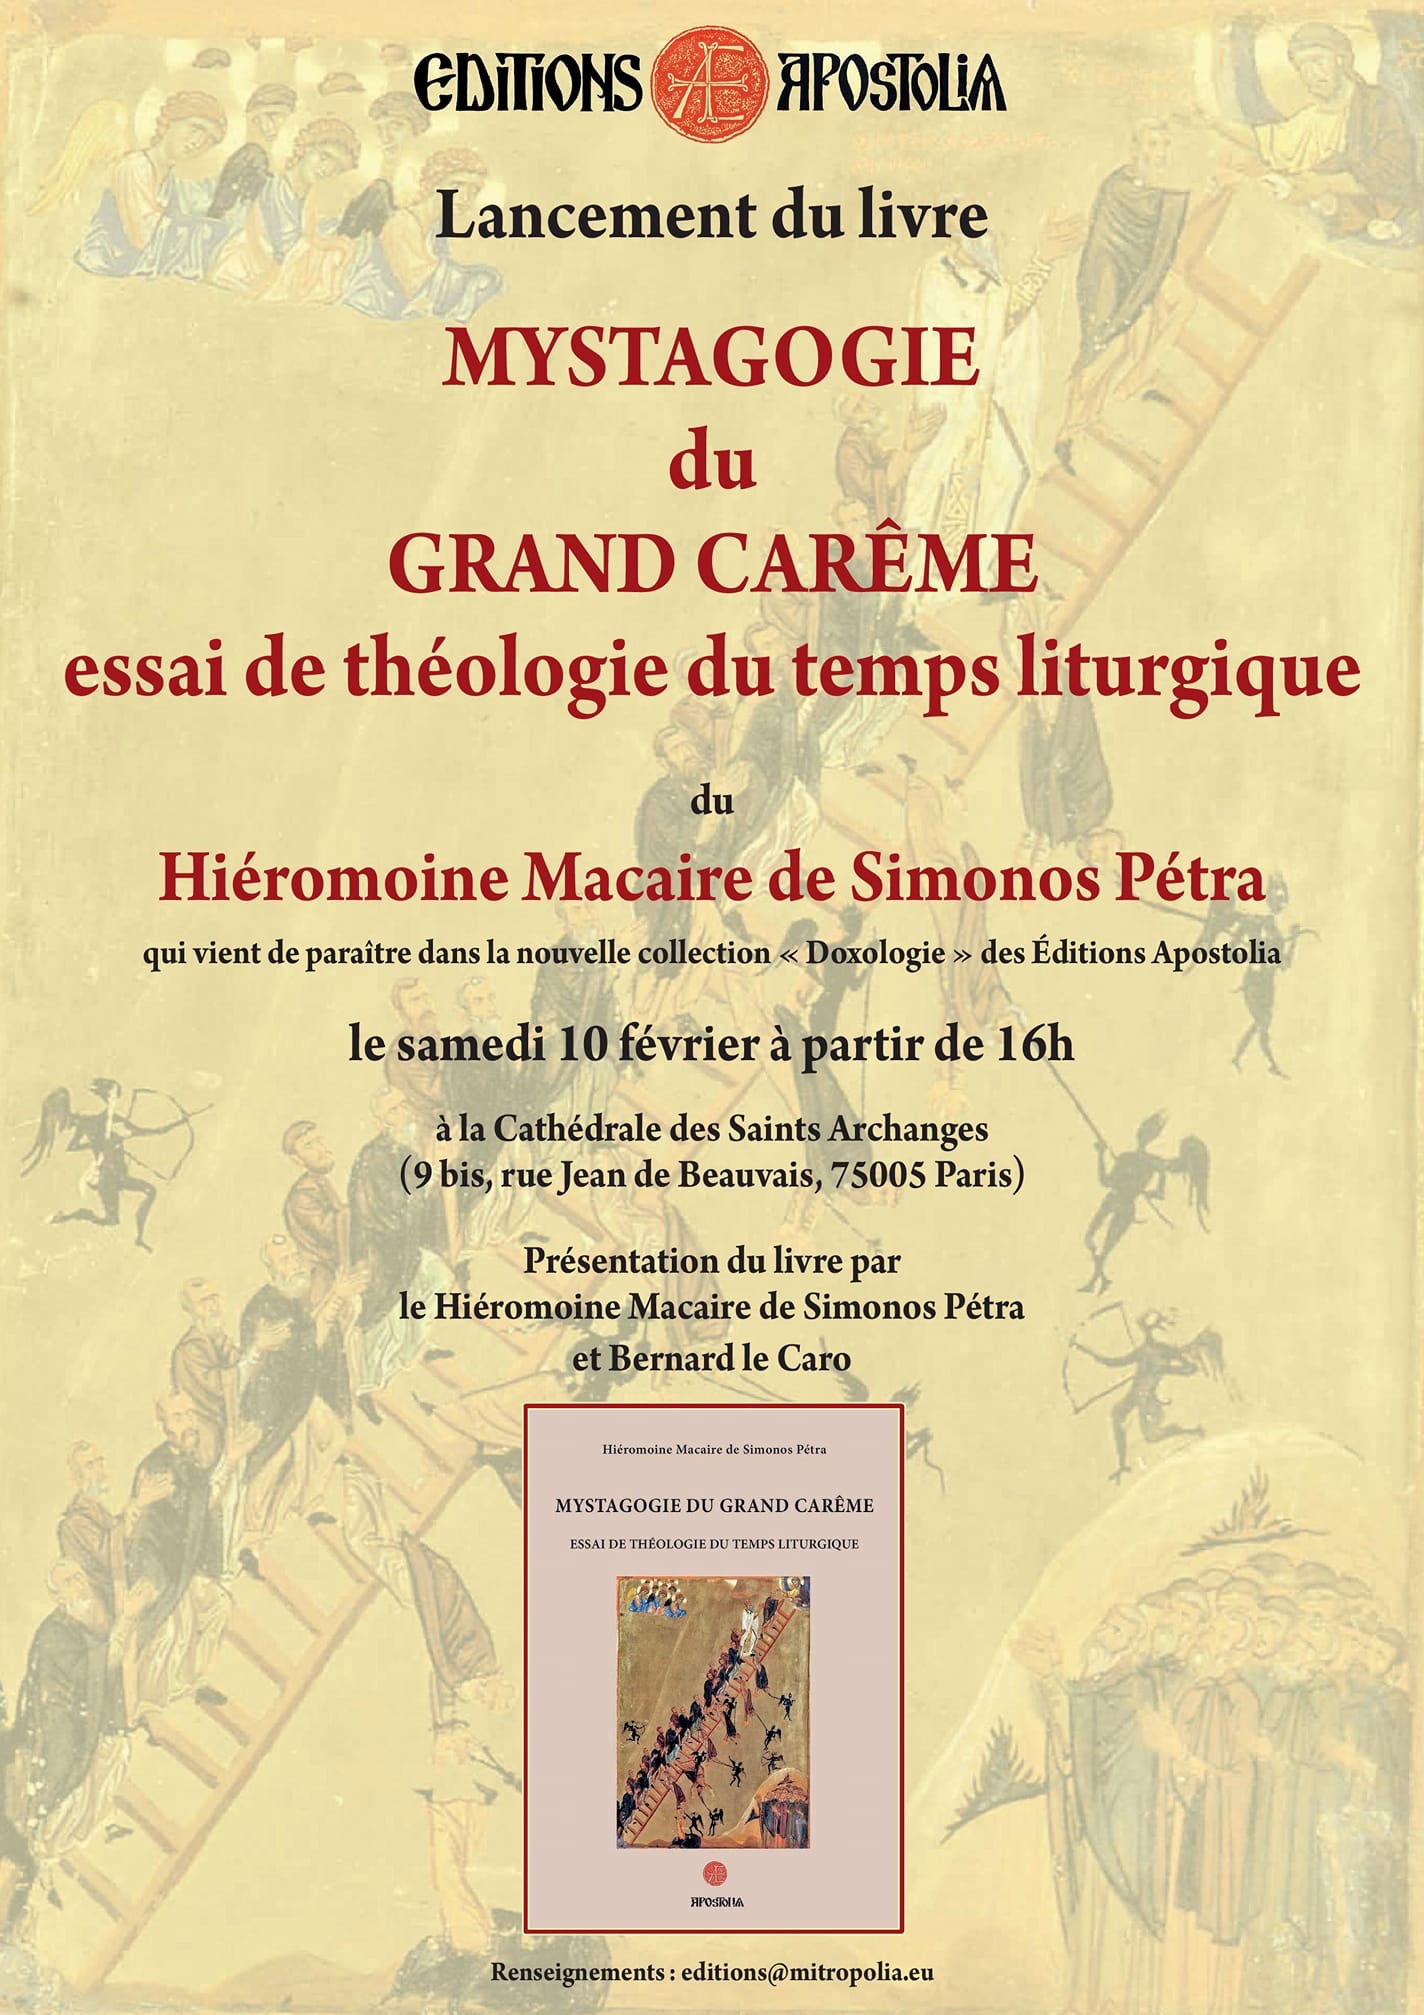 Nouveau livre « Mystagogie du Grand Carême – essai de théologie du temps liturgique » du hiéromoine Macaire de Simonopetra